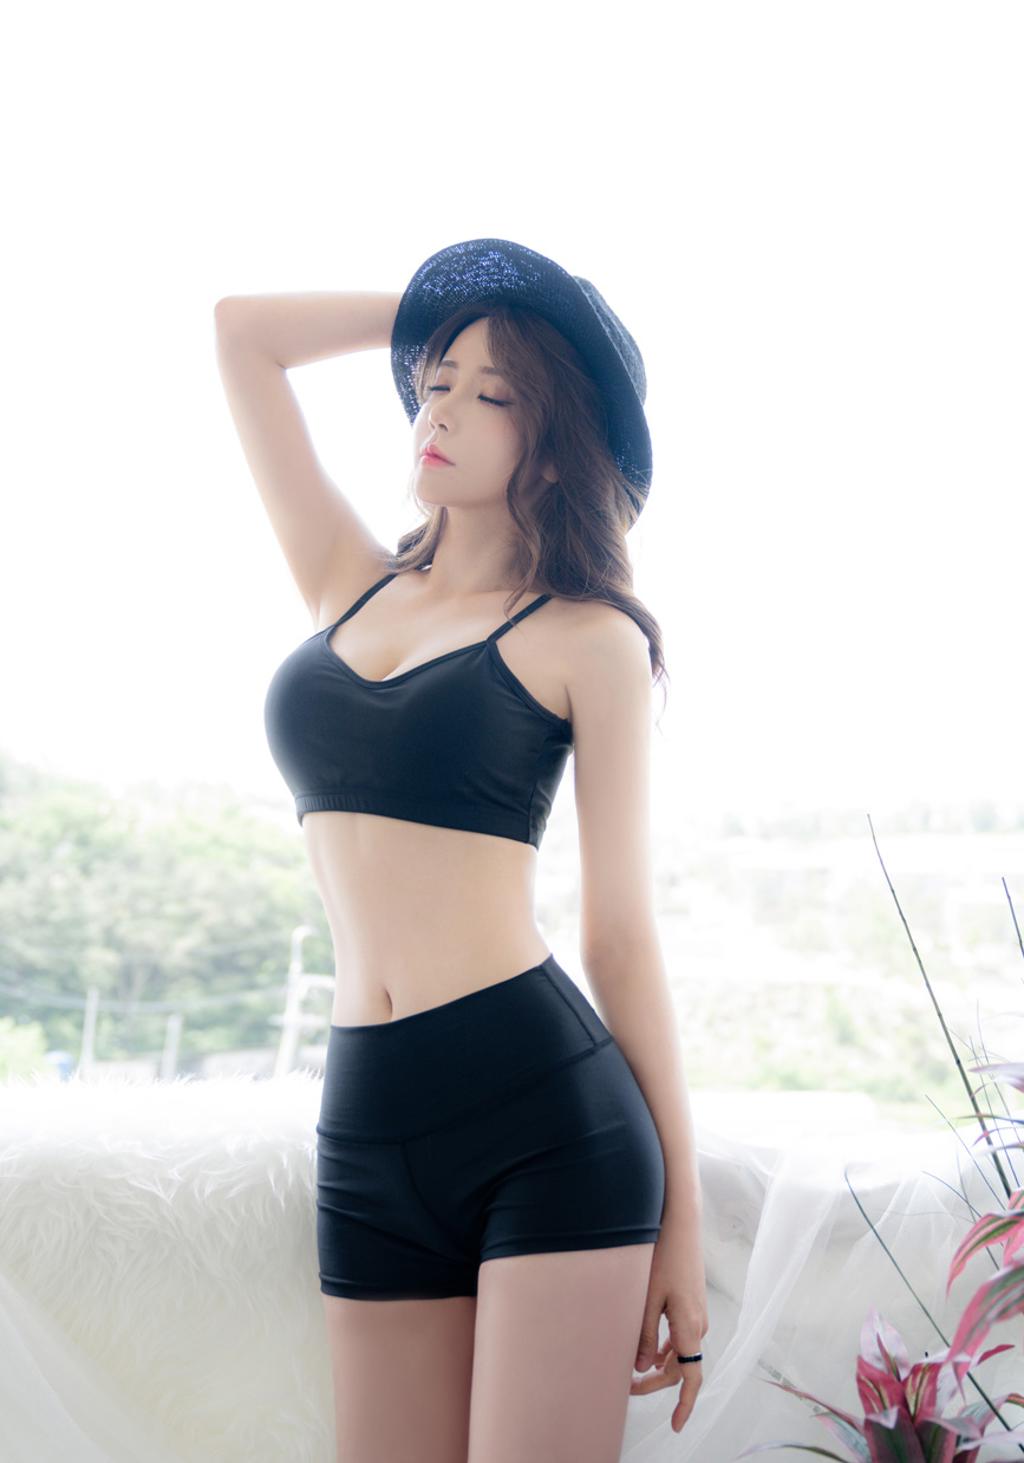 韩国M女模特.韩国美女模特写真集.Thor113